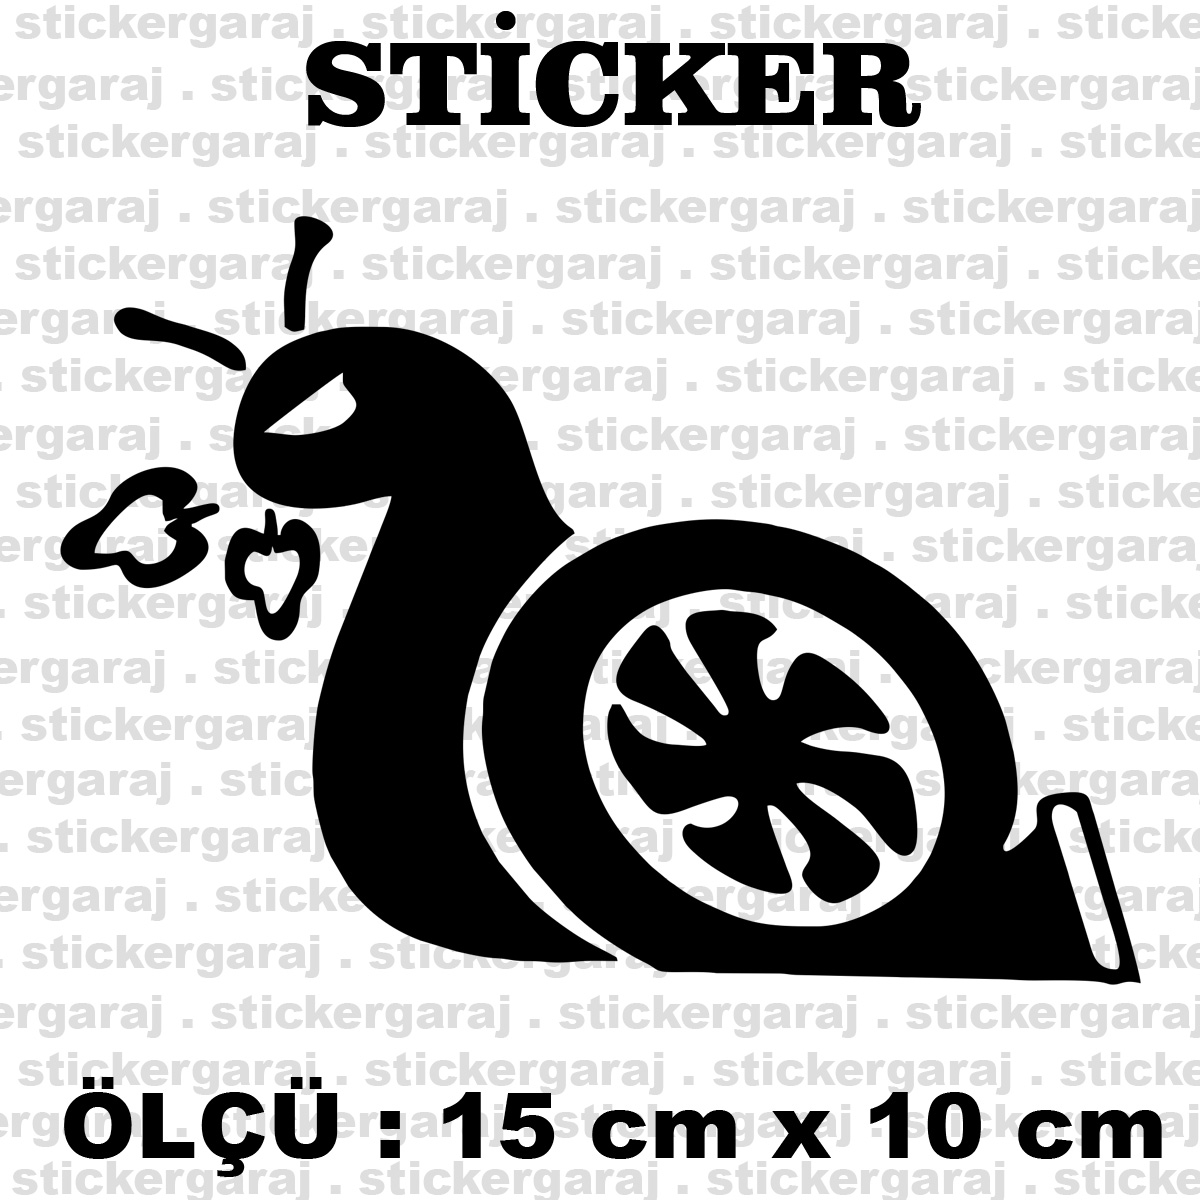 sumuklu bocek.cdr 15 10 1 - Böcek hızlı kızgın sticker